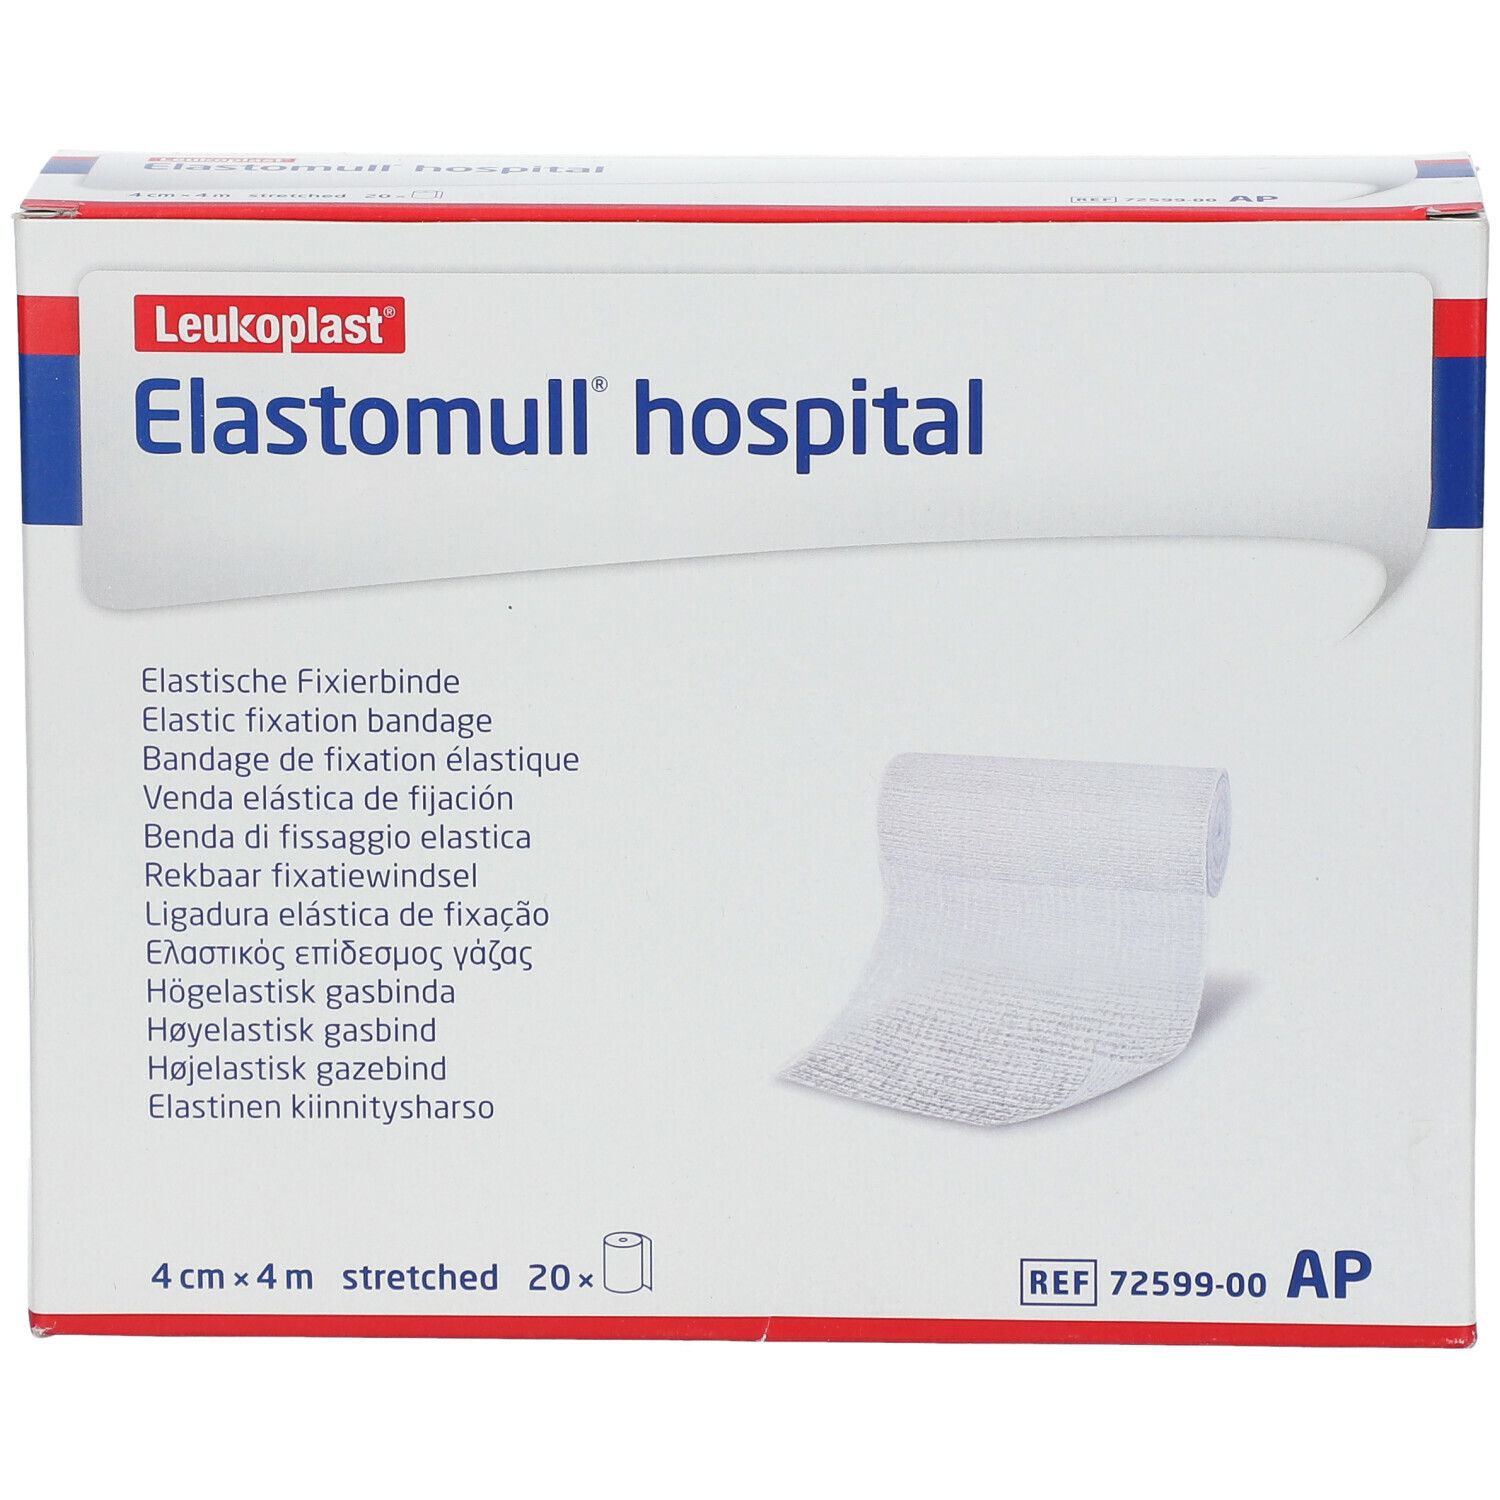 Elastomull® hospital elastische Fixierbinde 4 cm x 4 m